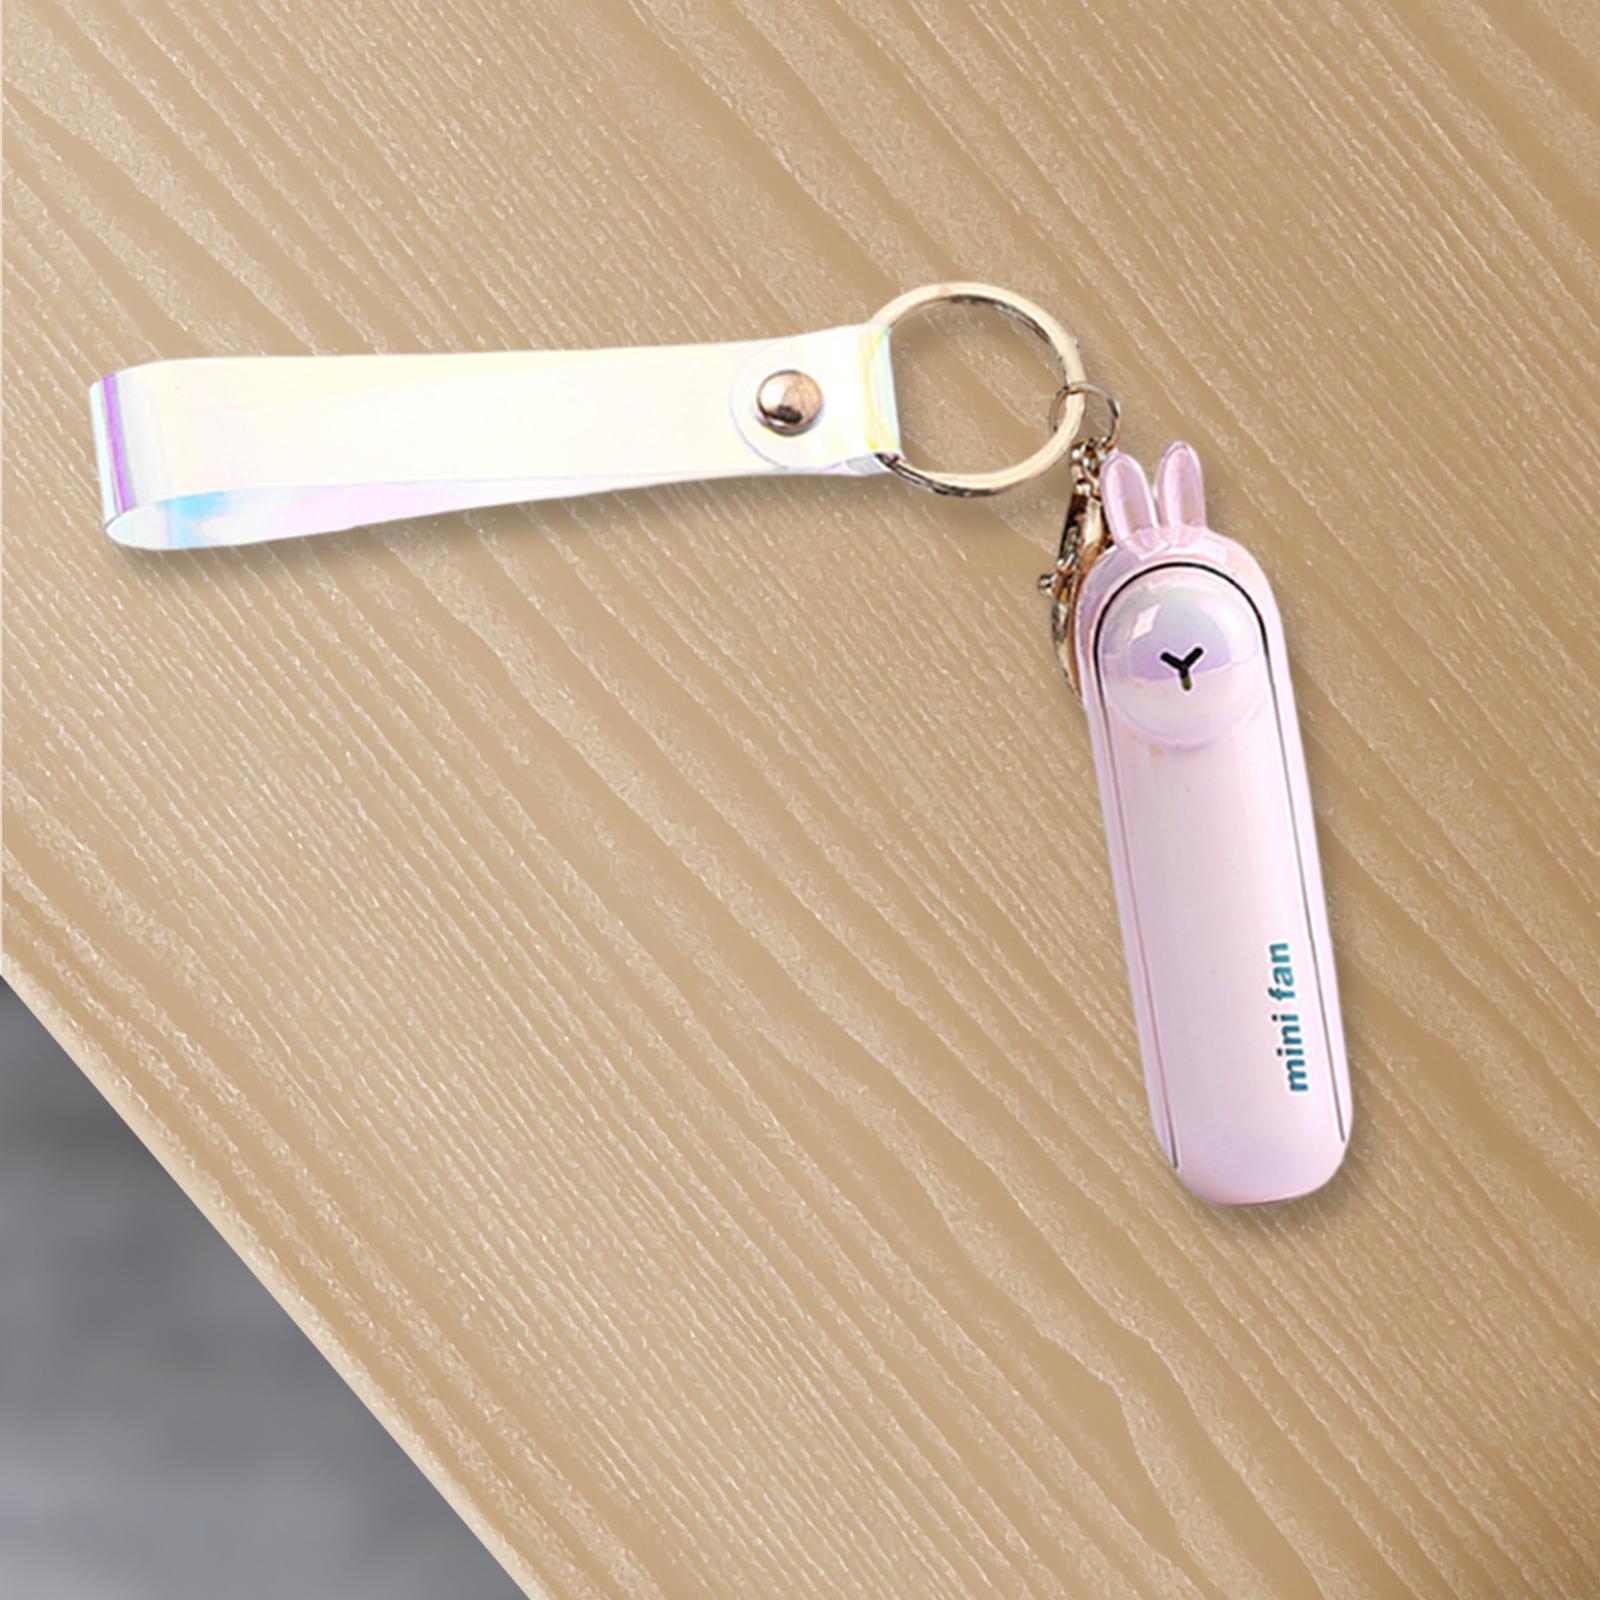 Keychain Fan Portable Mini Fan USB Pocket Fan for Home Outdoor Sports Travel Colorful Pink